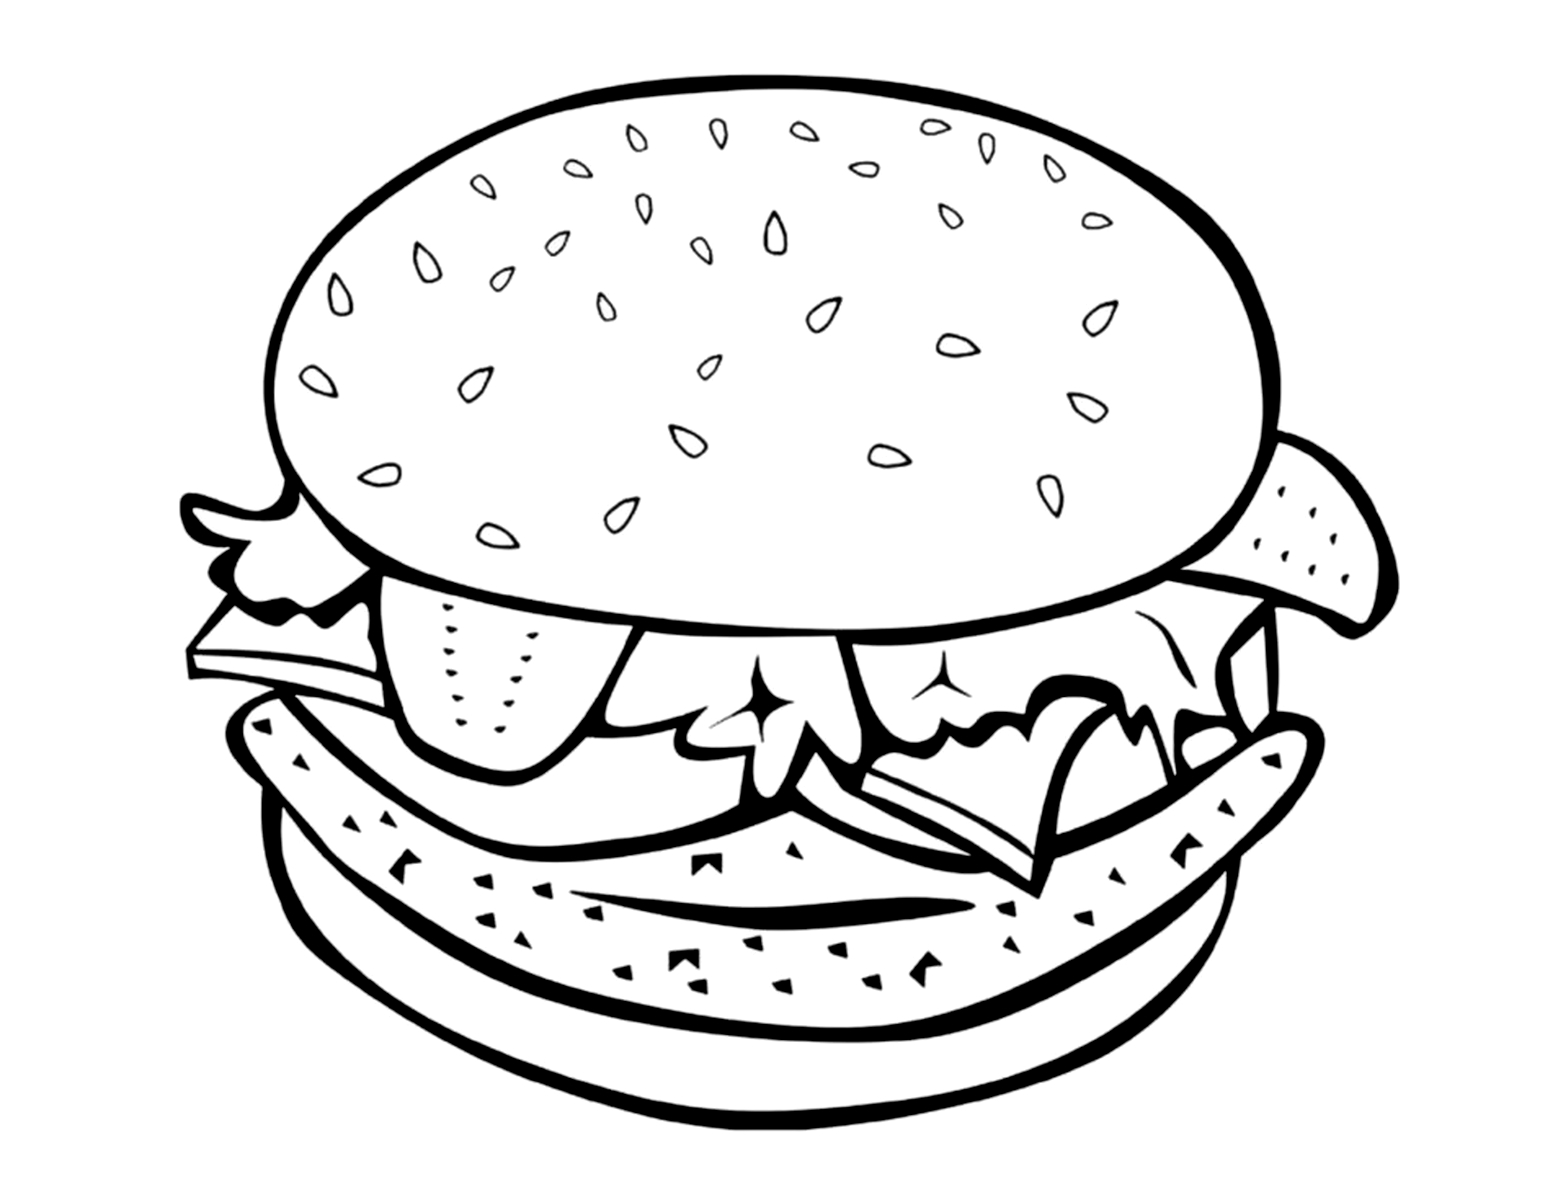 Cheeseburger #2